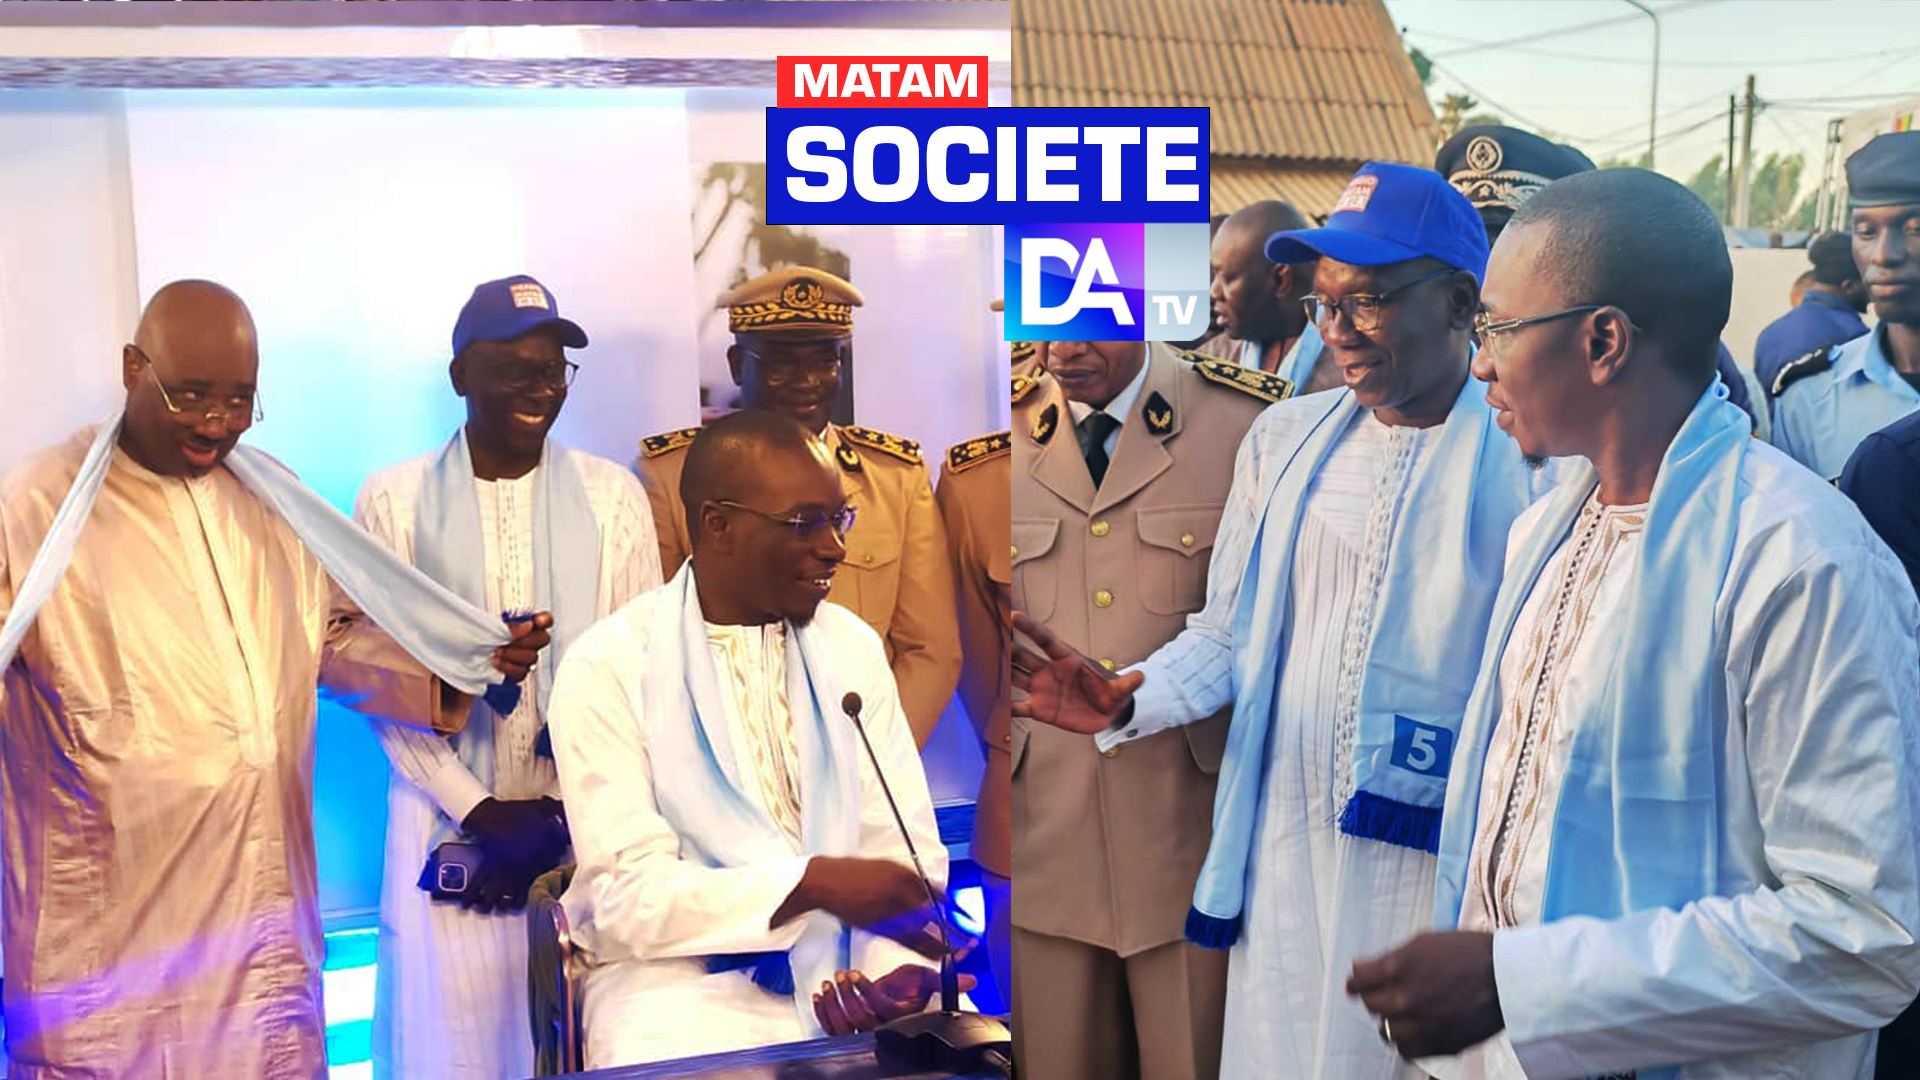 Inauguration des locaux de la RTS 5 de Matam: L' Agetip livre un joyau !